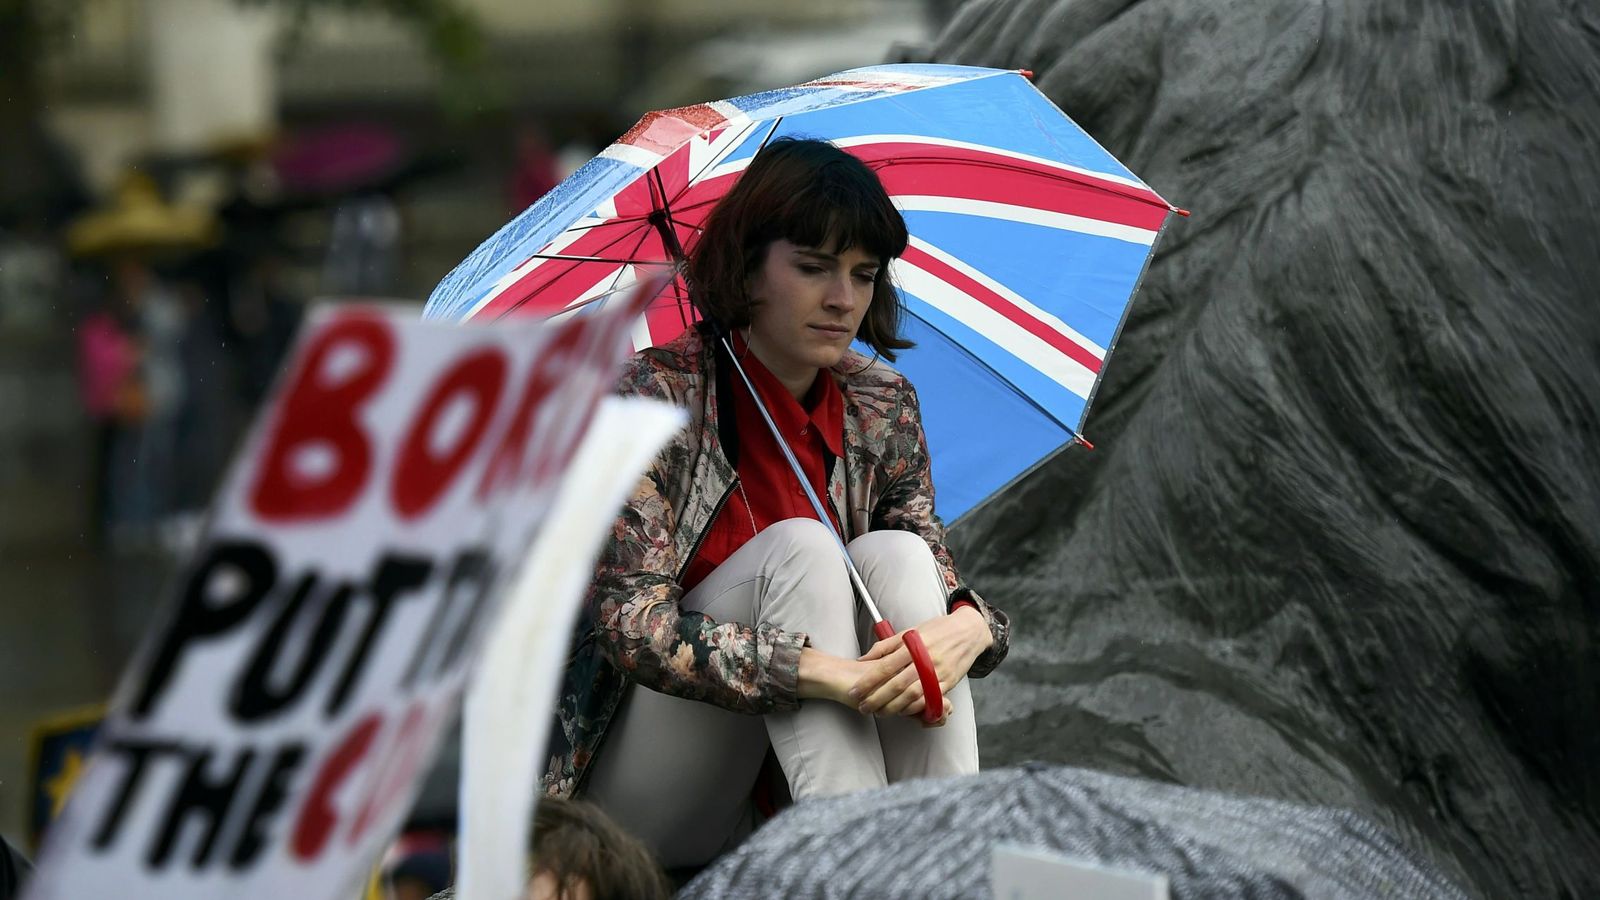 Foto: Una manifestante durante una marcha en apoyo de la UE celebrada en el centro de Londres, el 28 de junio de 2016. (Reuters)